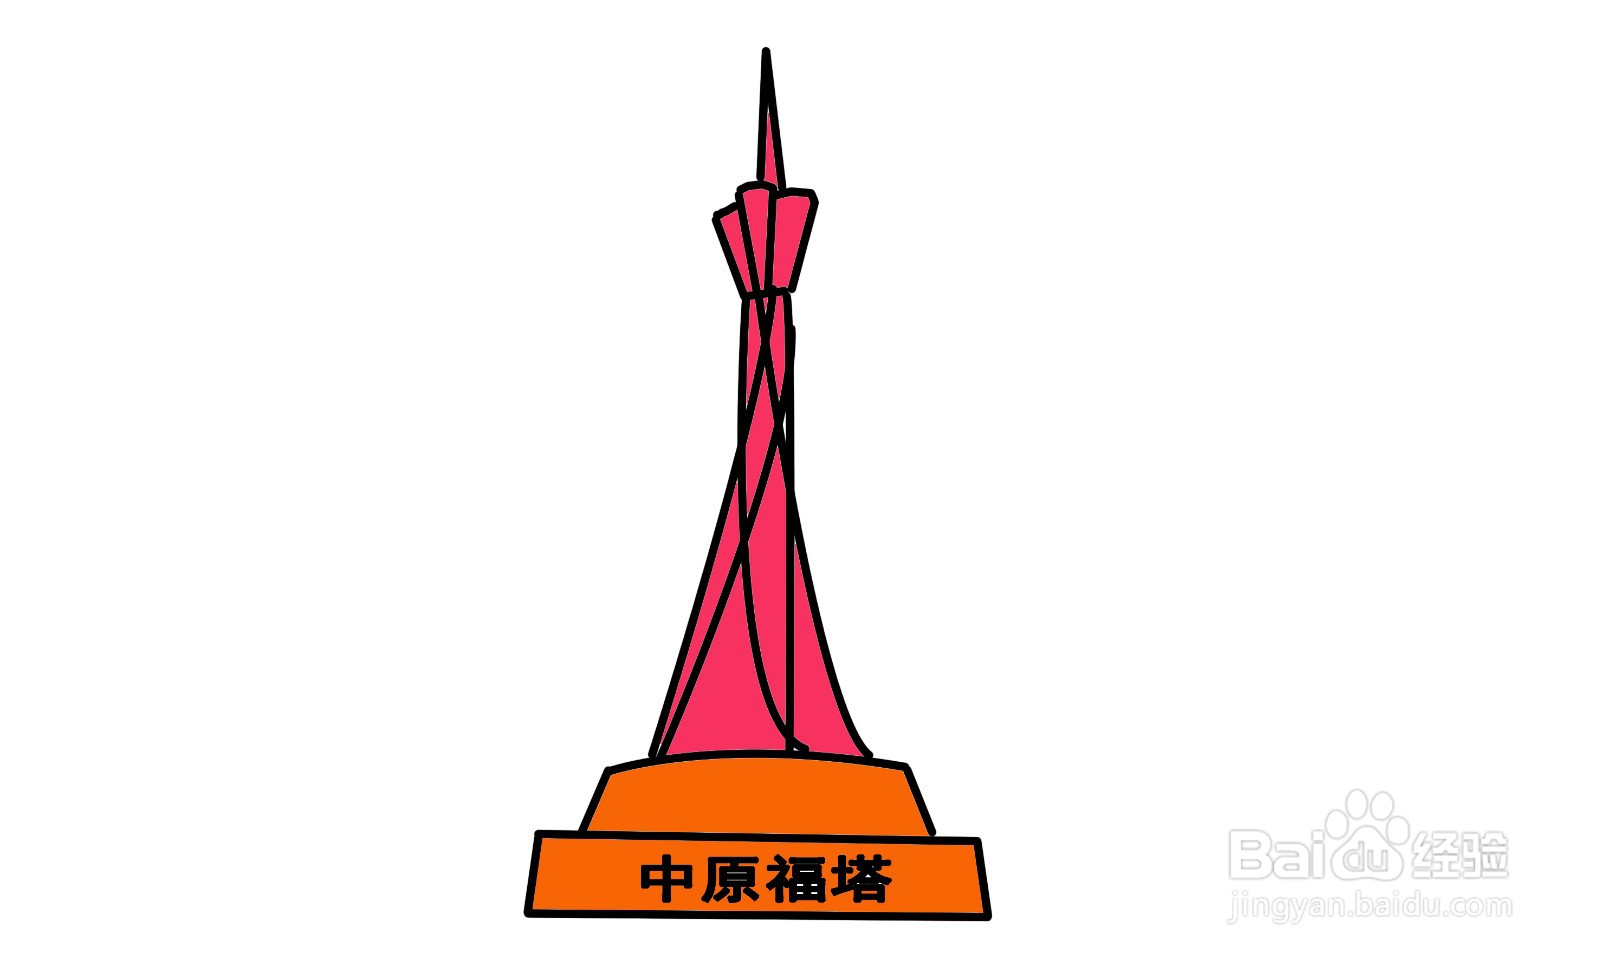 很多人去过郑州中原福塔今天教大家画出一个中原福塔简笔画